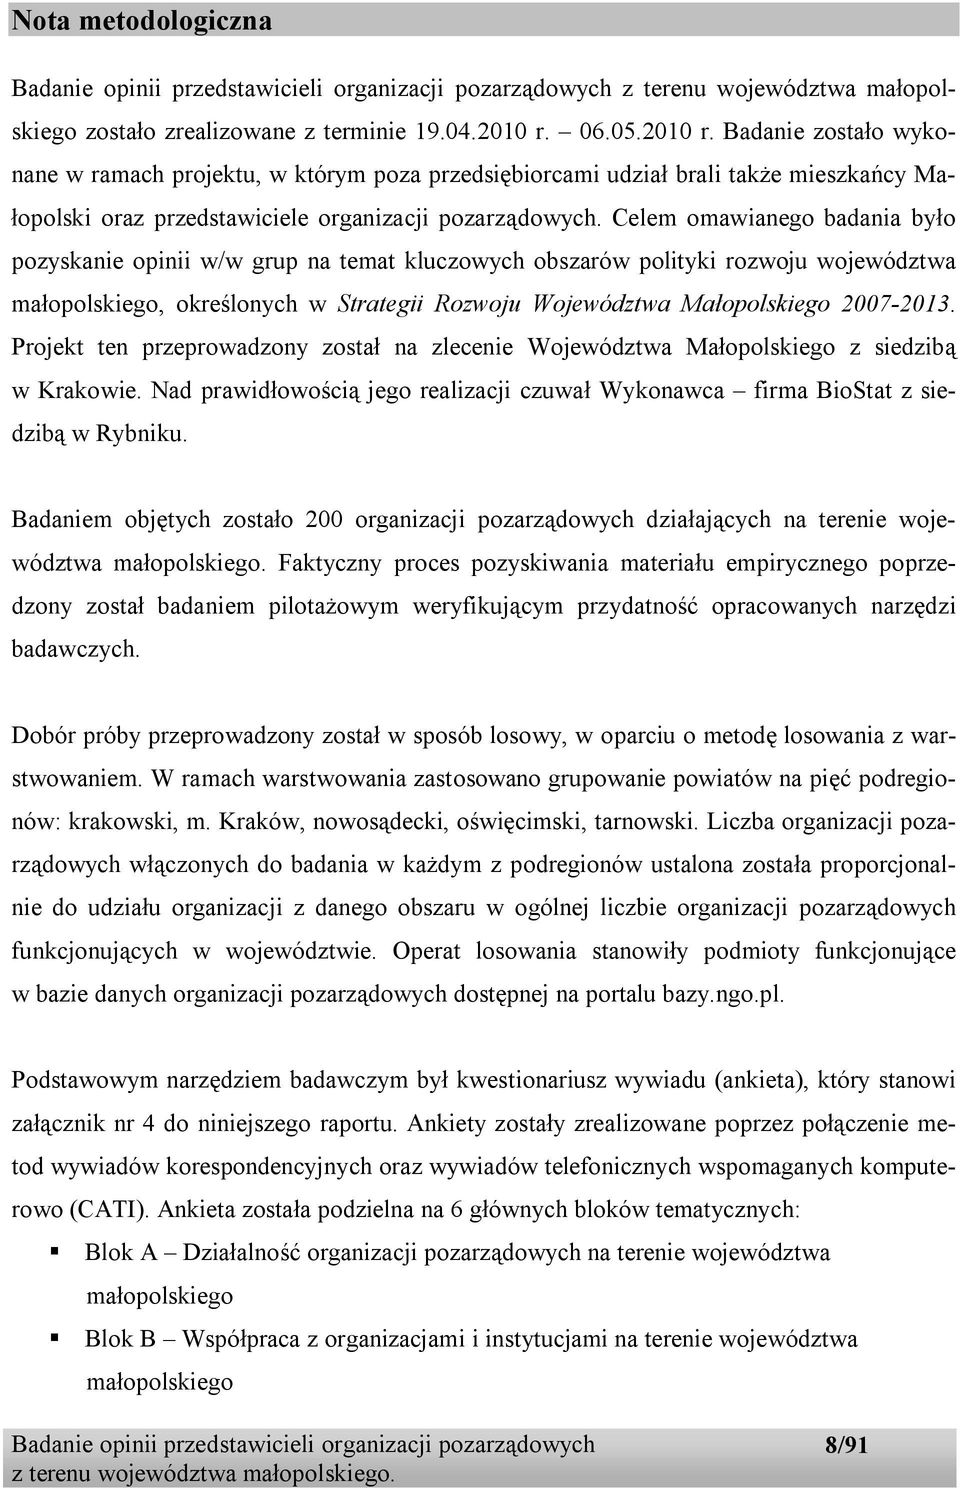 Celem omawianego badania było pozyskanie opinii w/w grup na temat kluczowych obszarów polityki rozwoju województwa małopolskiego, określonych w Strategii Rozwoju Województwa Małopolskiego 2007-2013.